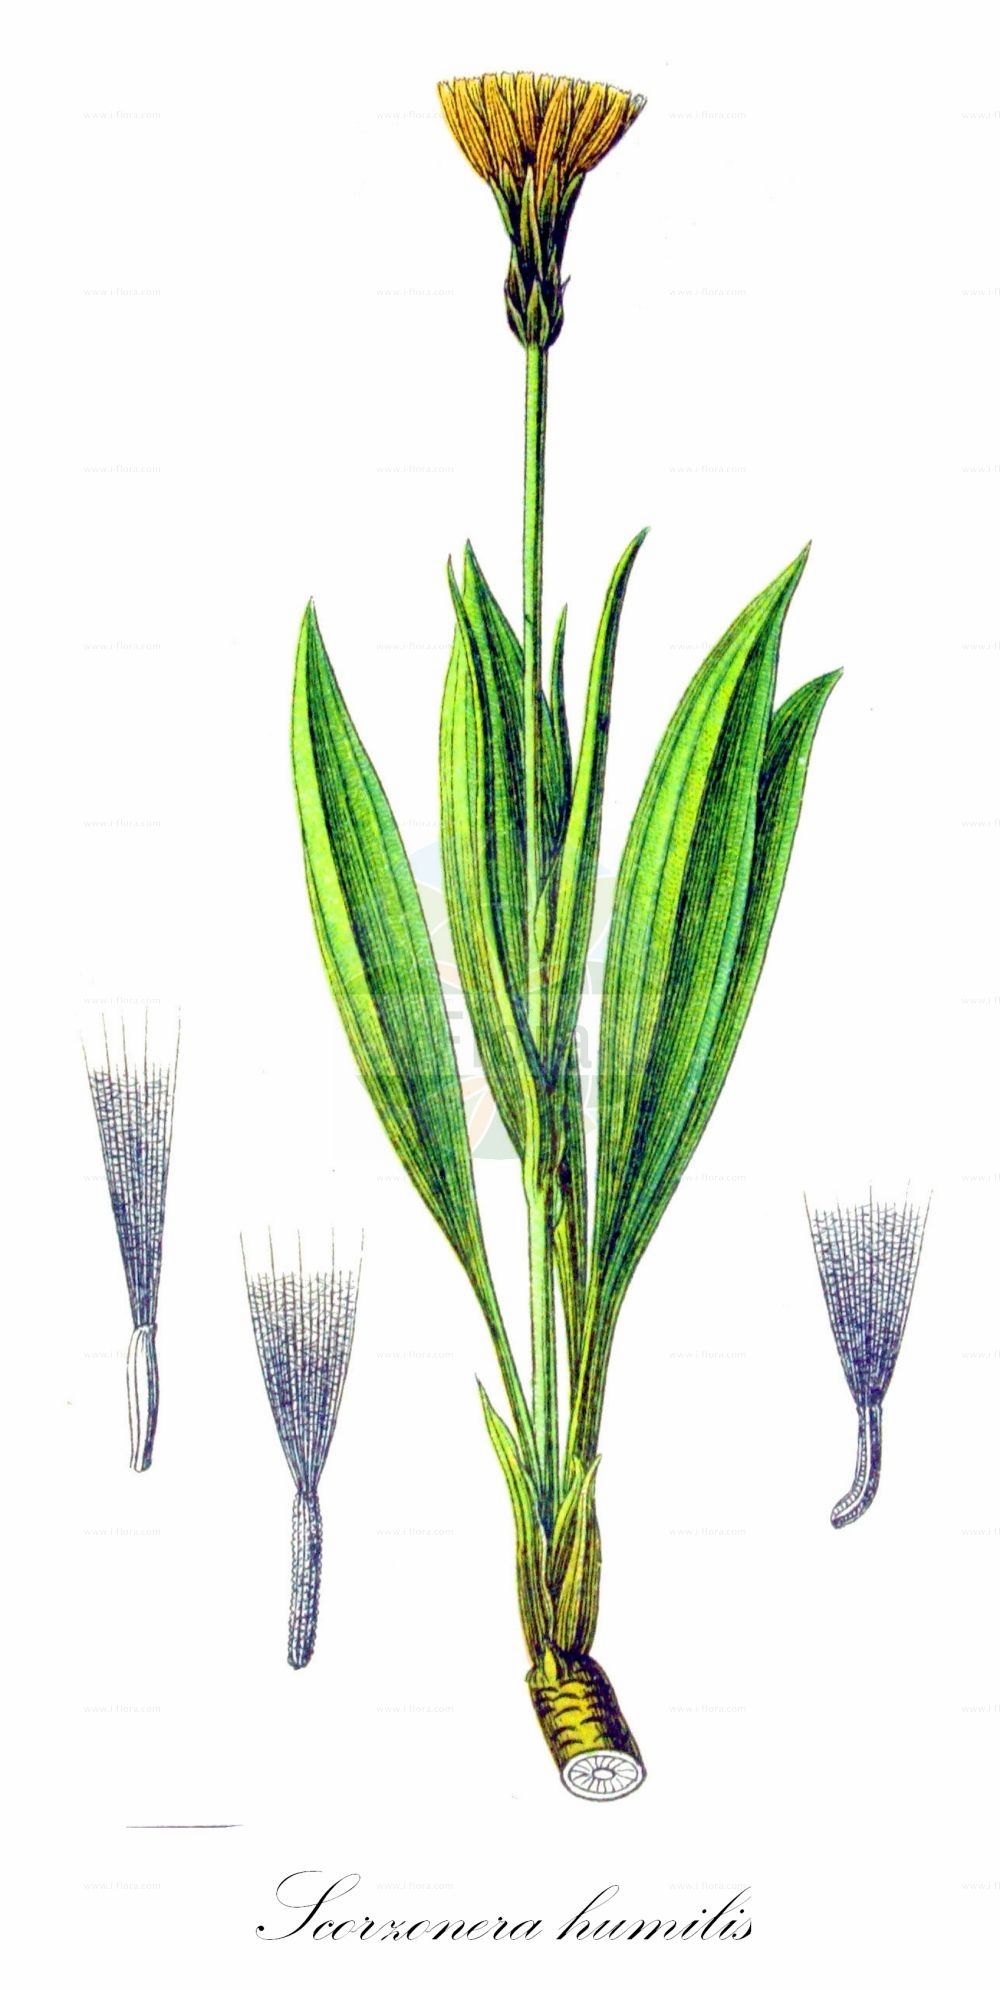 Historische Abbildung von Scorzonera humilis (Niedrige Schwarzwurzel - Viper's-grass). Das Bild zeigt Blatt, Bluete, Frucht und Same. ---- Historical Drawing of Scorzonera humilis (Niedrige Schwarzwurzel - Viper's-grass). The image is showing leaf, flower, fruit and seed.(Scorzonera humilis,Niedrige Schwarzwurzel,Viper's-grass,Scorzonera candollei,Scorzonera clusii,Scorzonera humilis,Scorzonera plantaginea,Scorzonera tenuifolia,Niedrige Schwarzwurzel,Viper's-grass,Dwarf Vipergrass,Dwarf Viper's-grass,Scorzonera,Schwarzwurzel,Scorzonera,Asteraceae,Korbblütengewächse,Daisy family,Blatt,Bluete,Frucht,Same,leaf,flower,fruit,seed,Sturm (1796f))